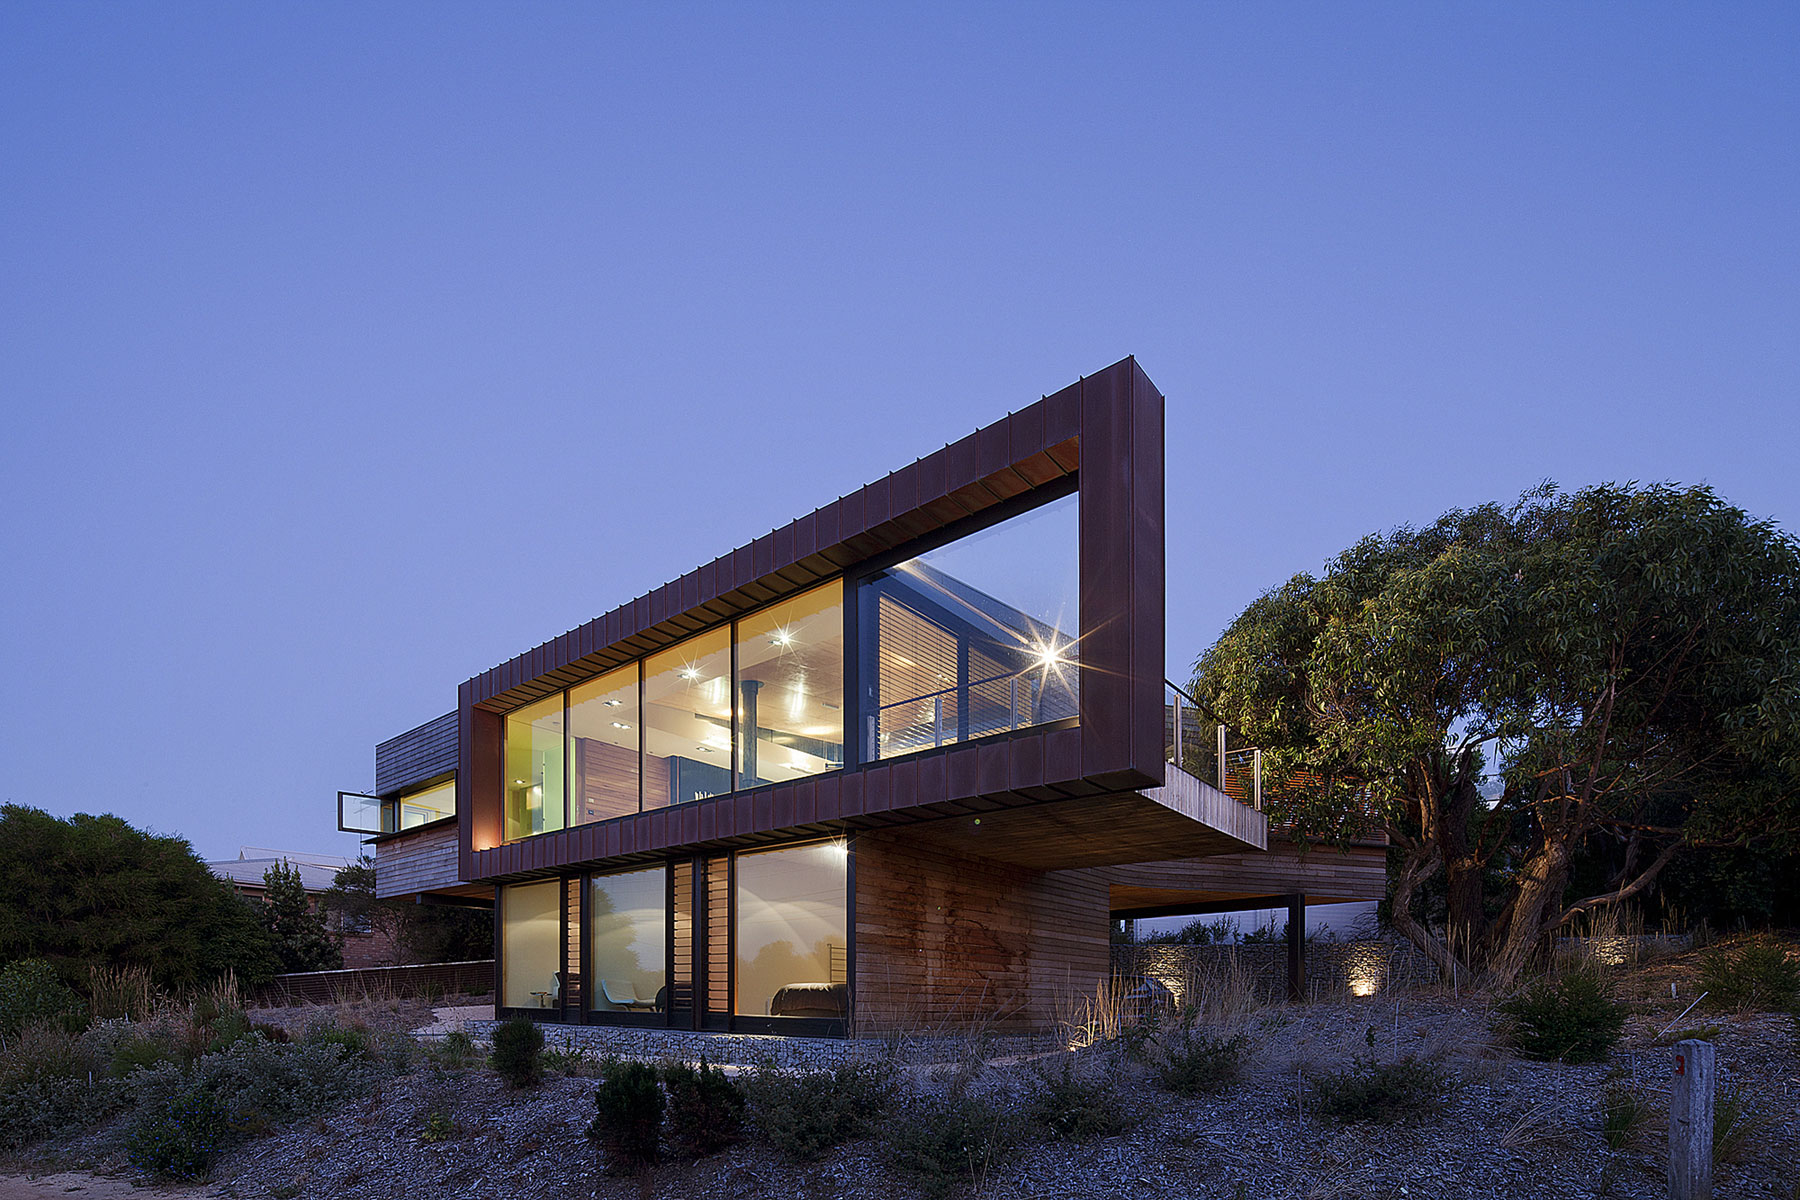 Причудливая конструкция великолепной виллы melba от seeley architects, энгли, австралия